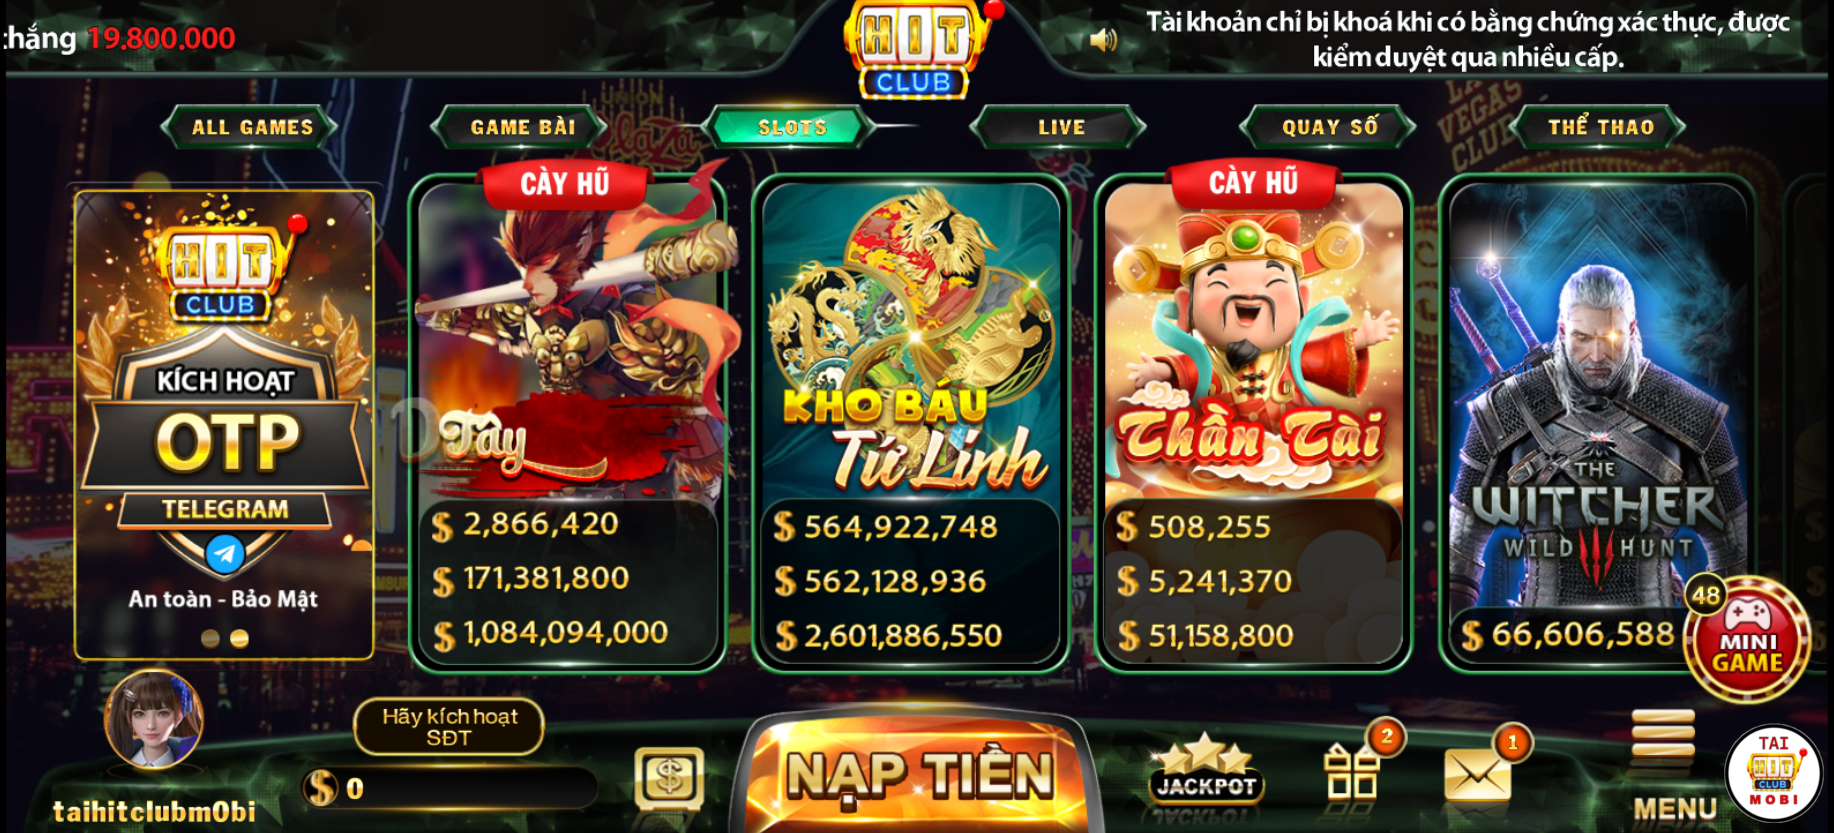 Slots game Hitclub có đồ học đẹp mắt và phần thưởng vị trí hàng tỷ đồng